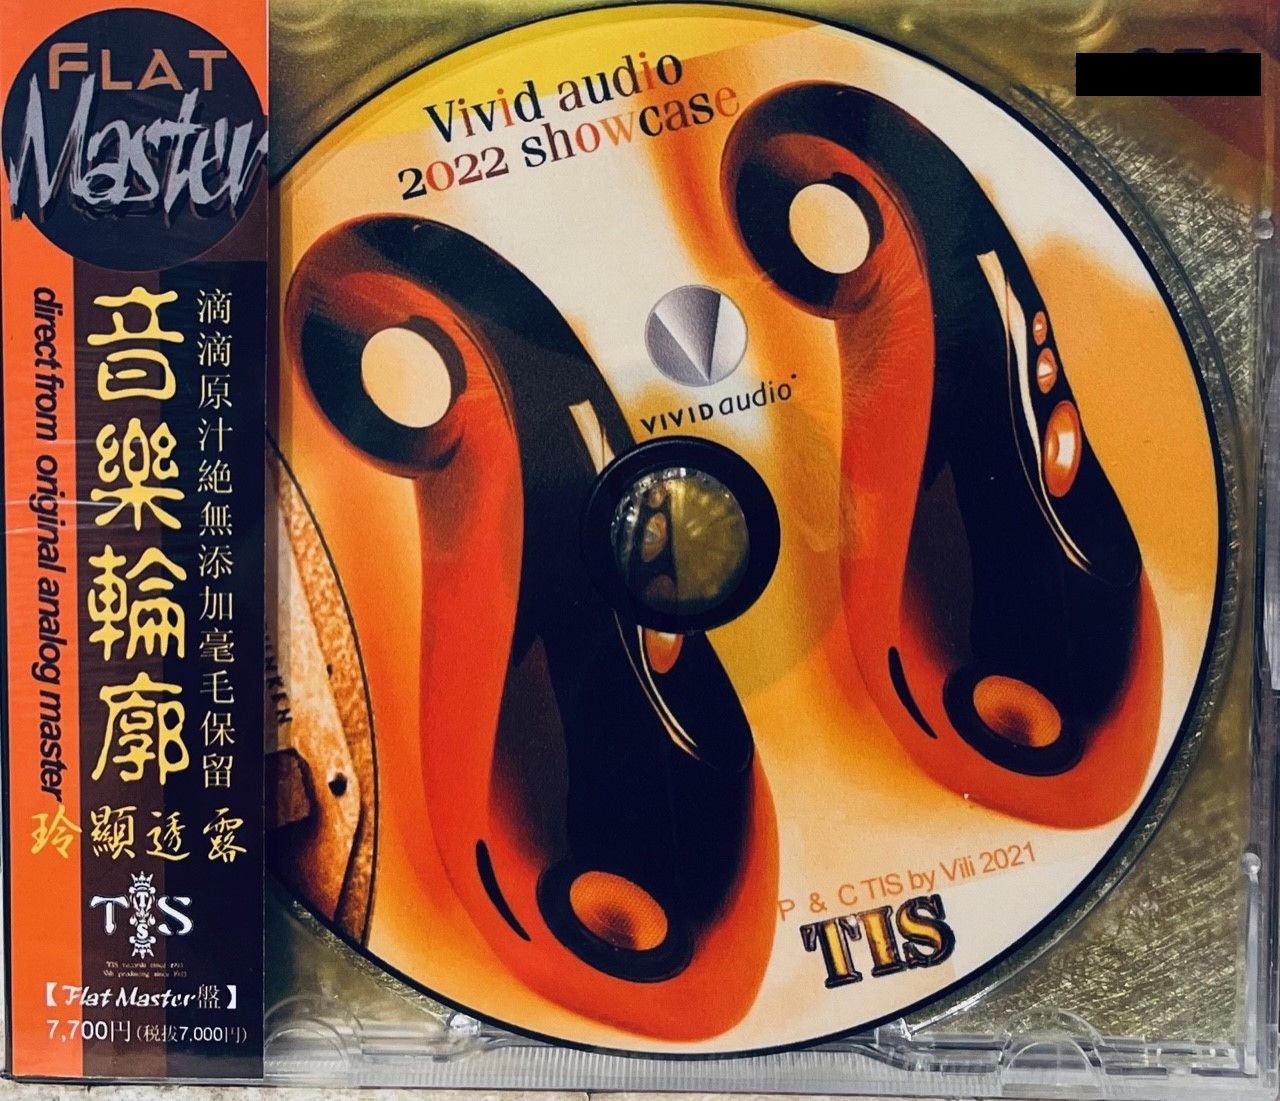 VIVID AUDIO 2022 SHOWCASE - TIS LABEL (CD)